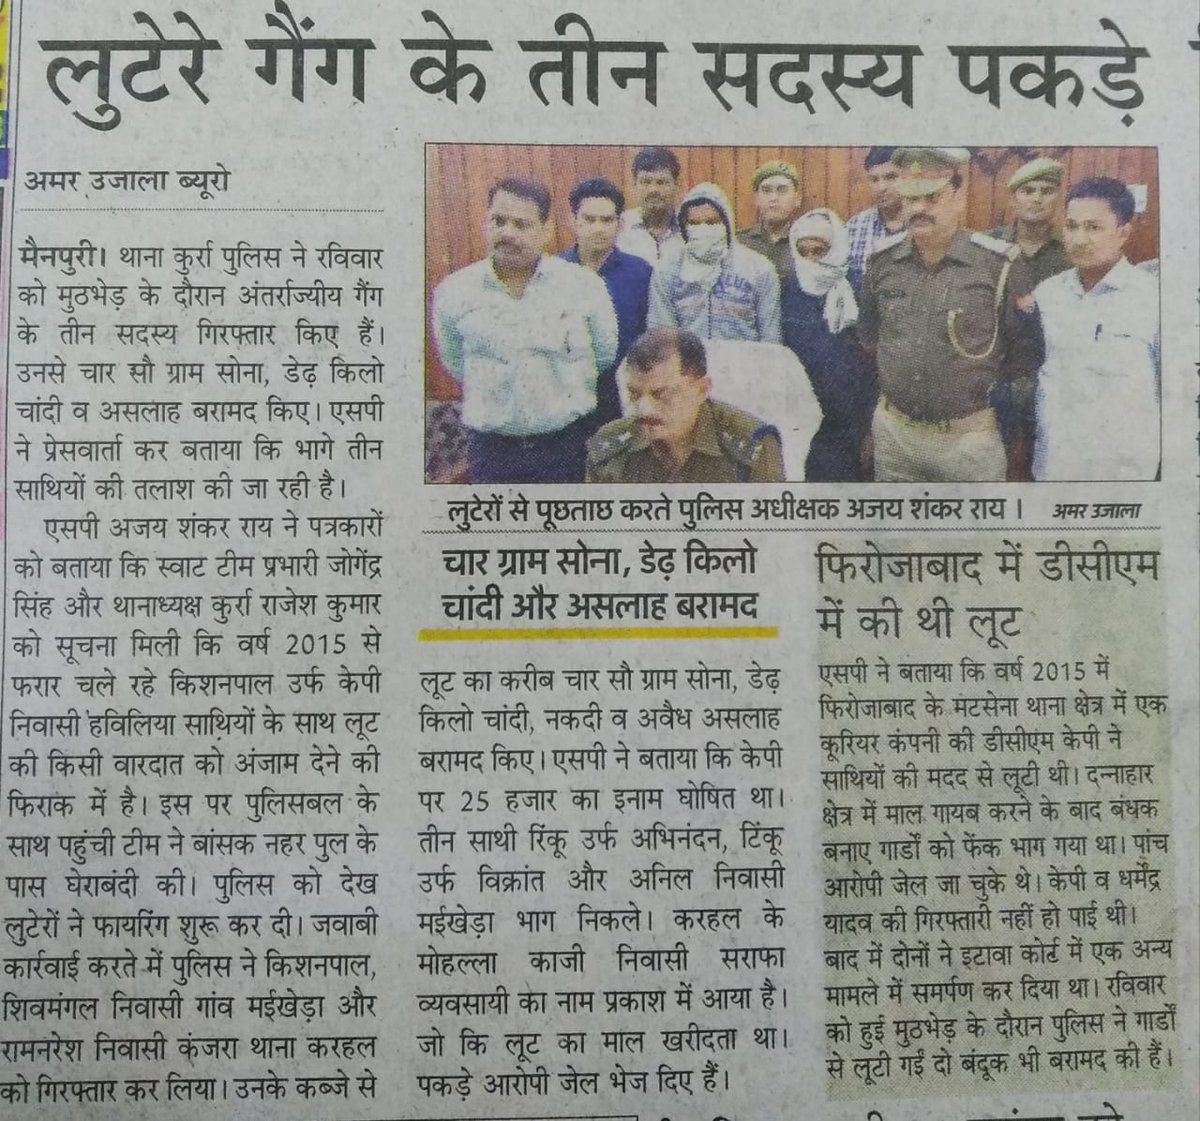 मैनपुरी पुलिस द्वारा 25000रू के इनामिया सहित अंतर्जनपदीय लुटेरे गैंग के सदस्यों की गिरफ्तारी के संबंध में प्रकाशित खबरें। @Uppolice @dgpup @adgzoneagra @igrangeagra @News18UP